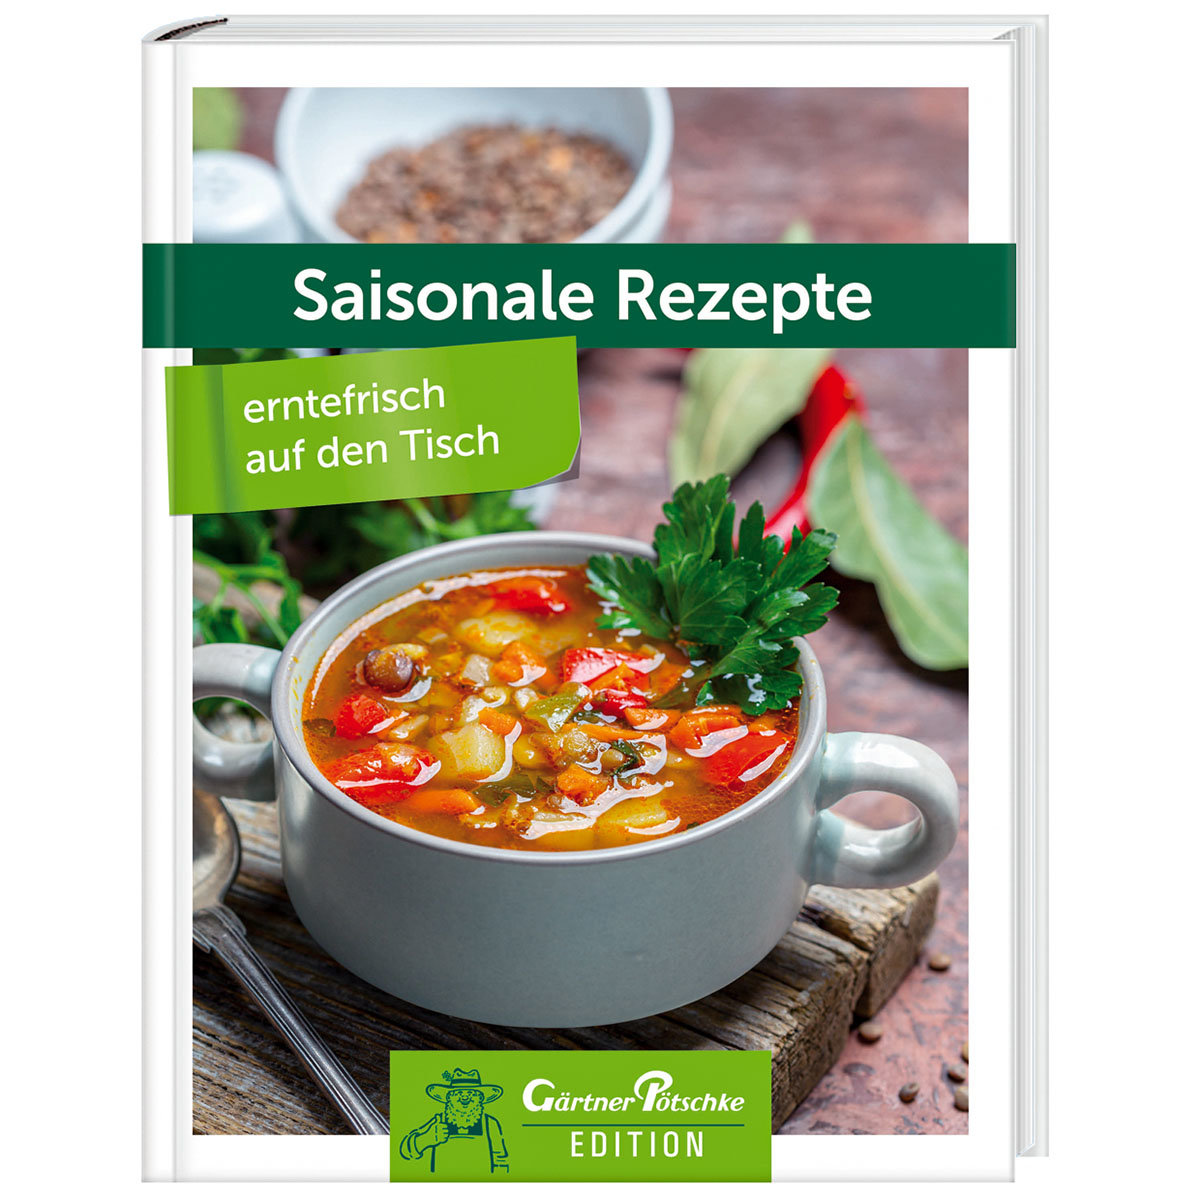 Saisonale Rezepte - erntefrisch auf den Tisch - Gärtner Pötschke Edition
